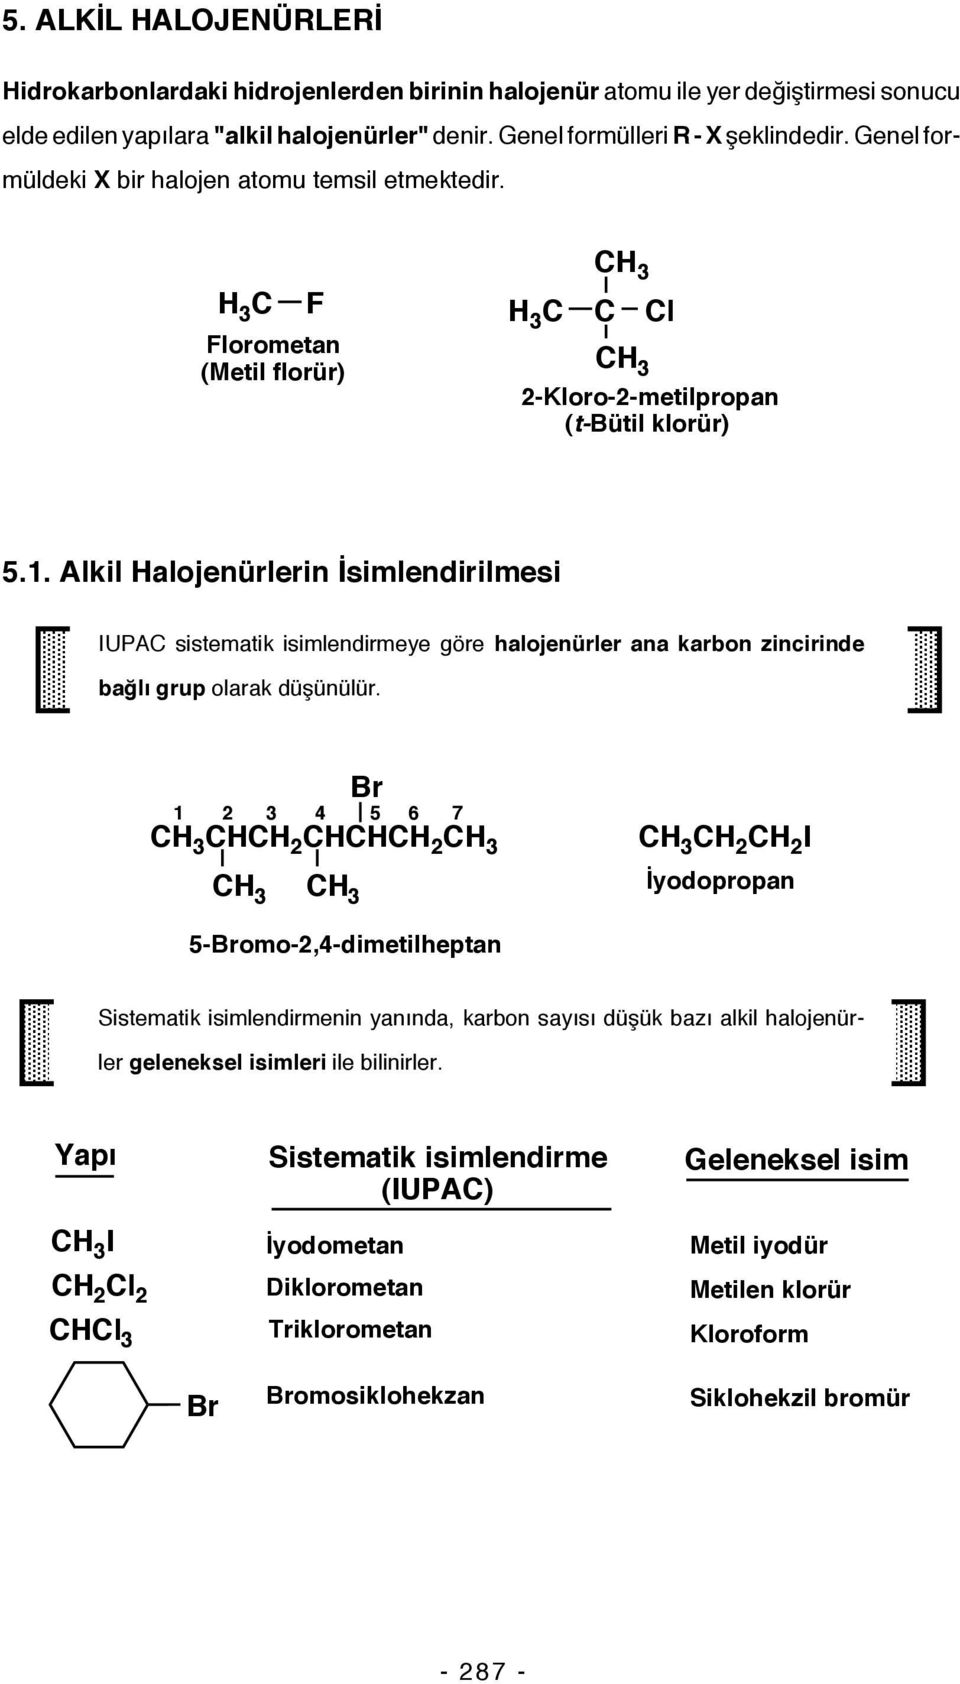 Alkil alojenürlerin İsimlendirilmesi IUPA sistematik isimlendirmeye göre halojenürler ana karbon zincirinde bağlı grup olarak düşünülür.